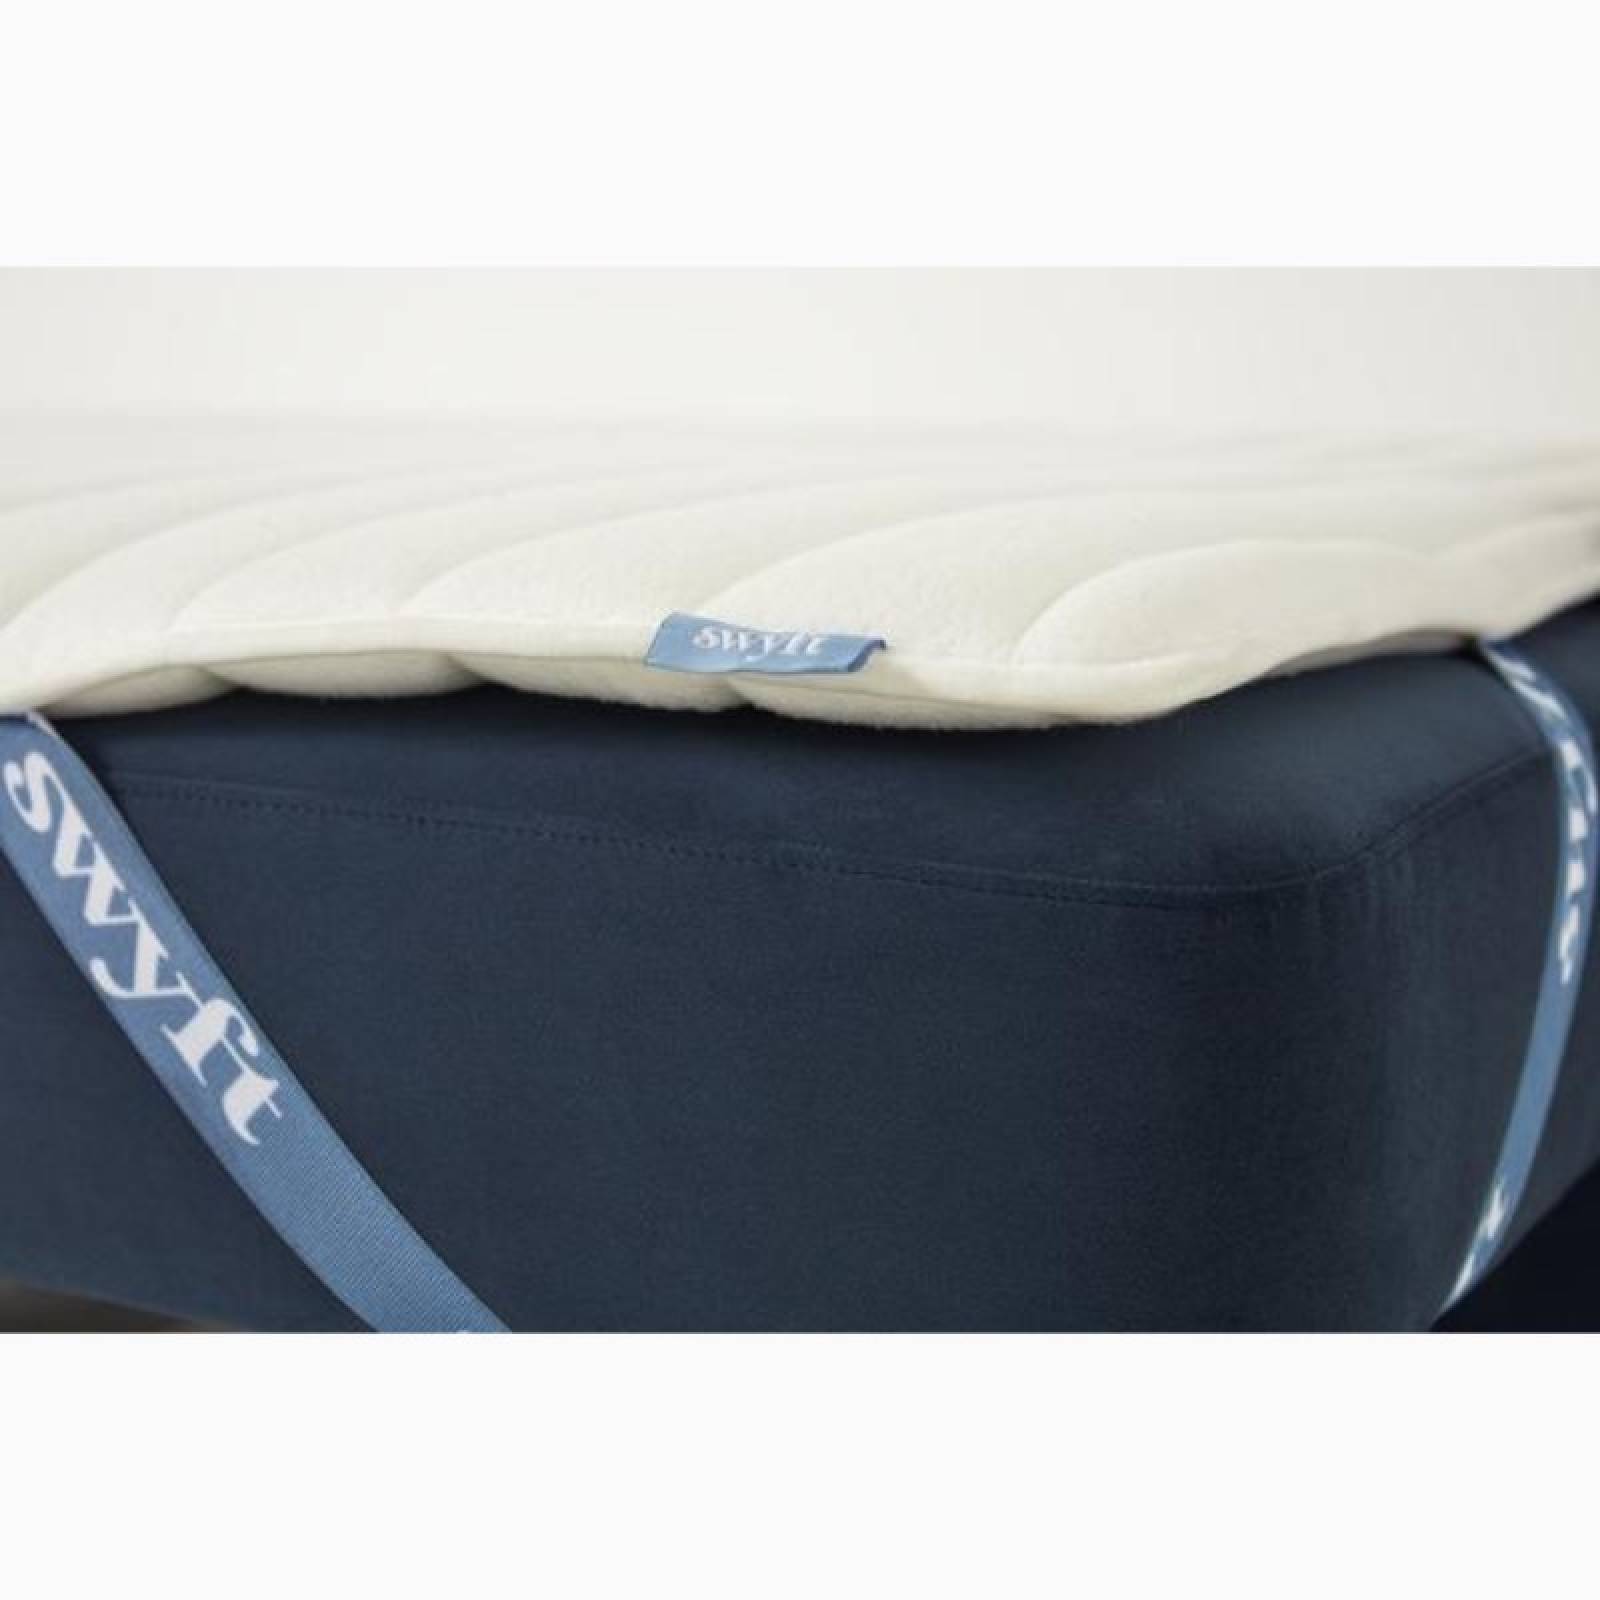 Swyft - Model 04 - 3 Seater Sofa Bed - Velvet Teal thumbnails